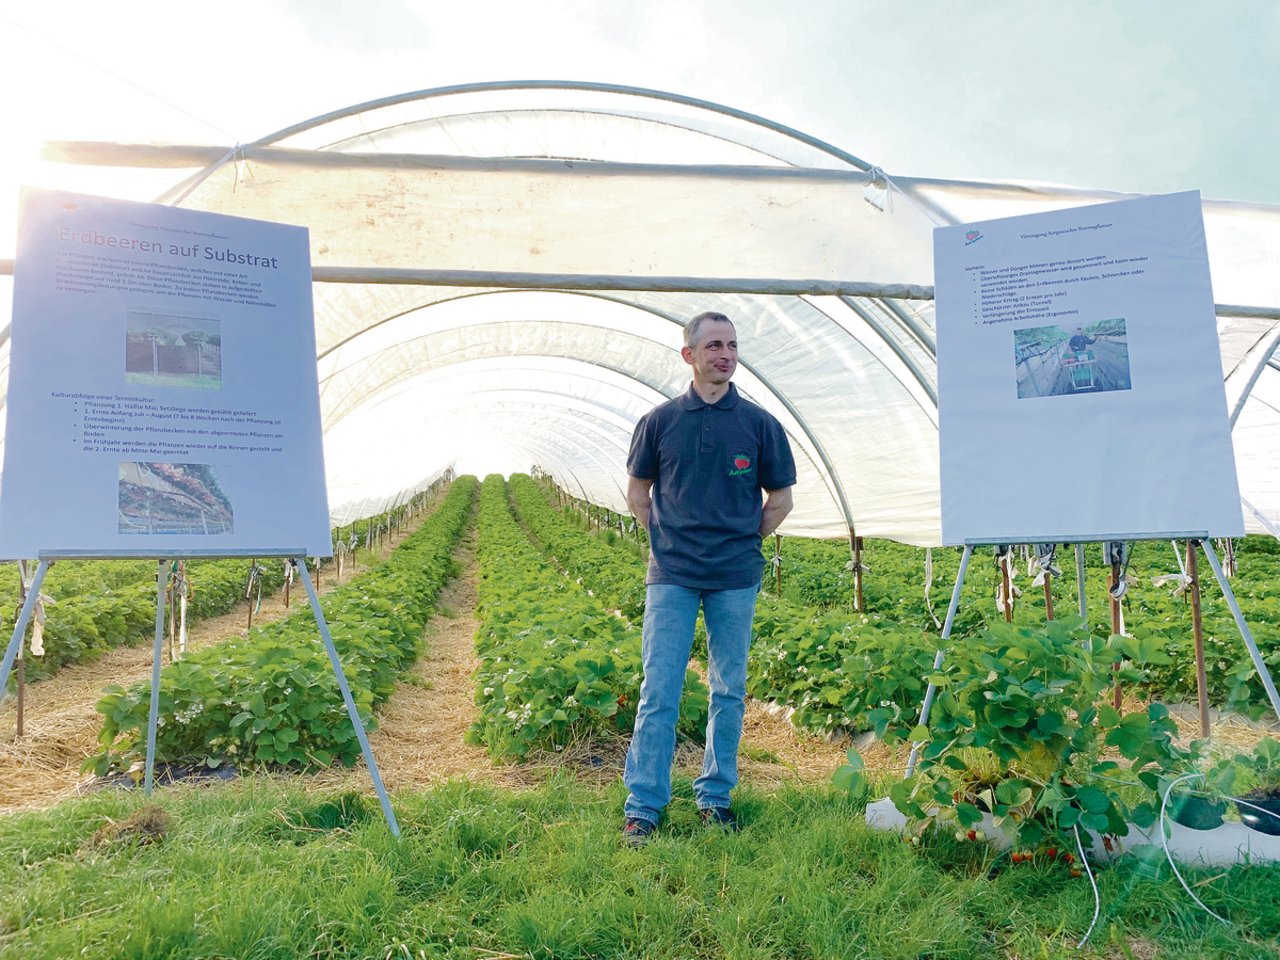 Beerenpflanzer Markus Wietlisbach erläutert den Edbeerenanbau auf Substrat in Töpfen (rechts unten). Im Hintergrund die Folientunnels mit Erdbeeren bei Willi Staubli in Muri. (Bilder Josef Scherer)